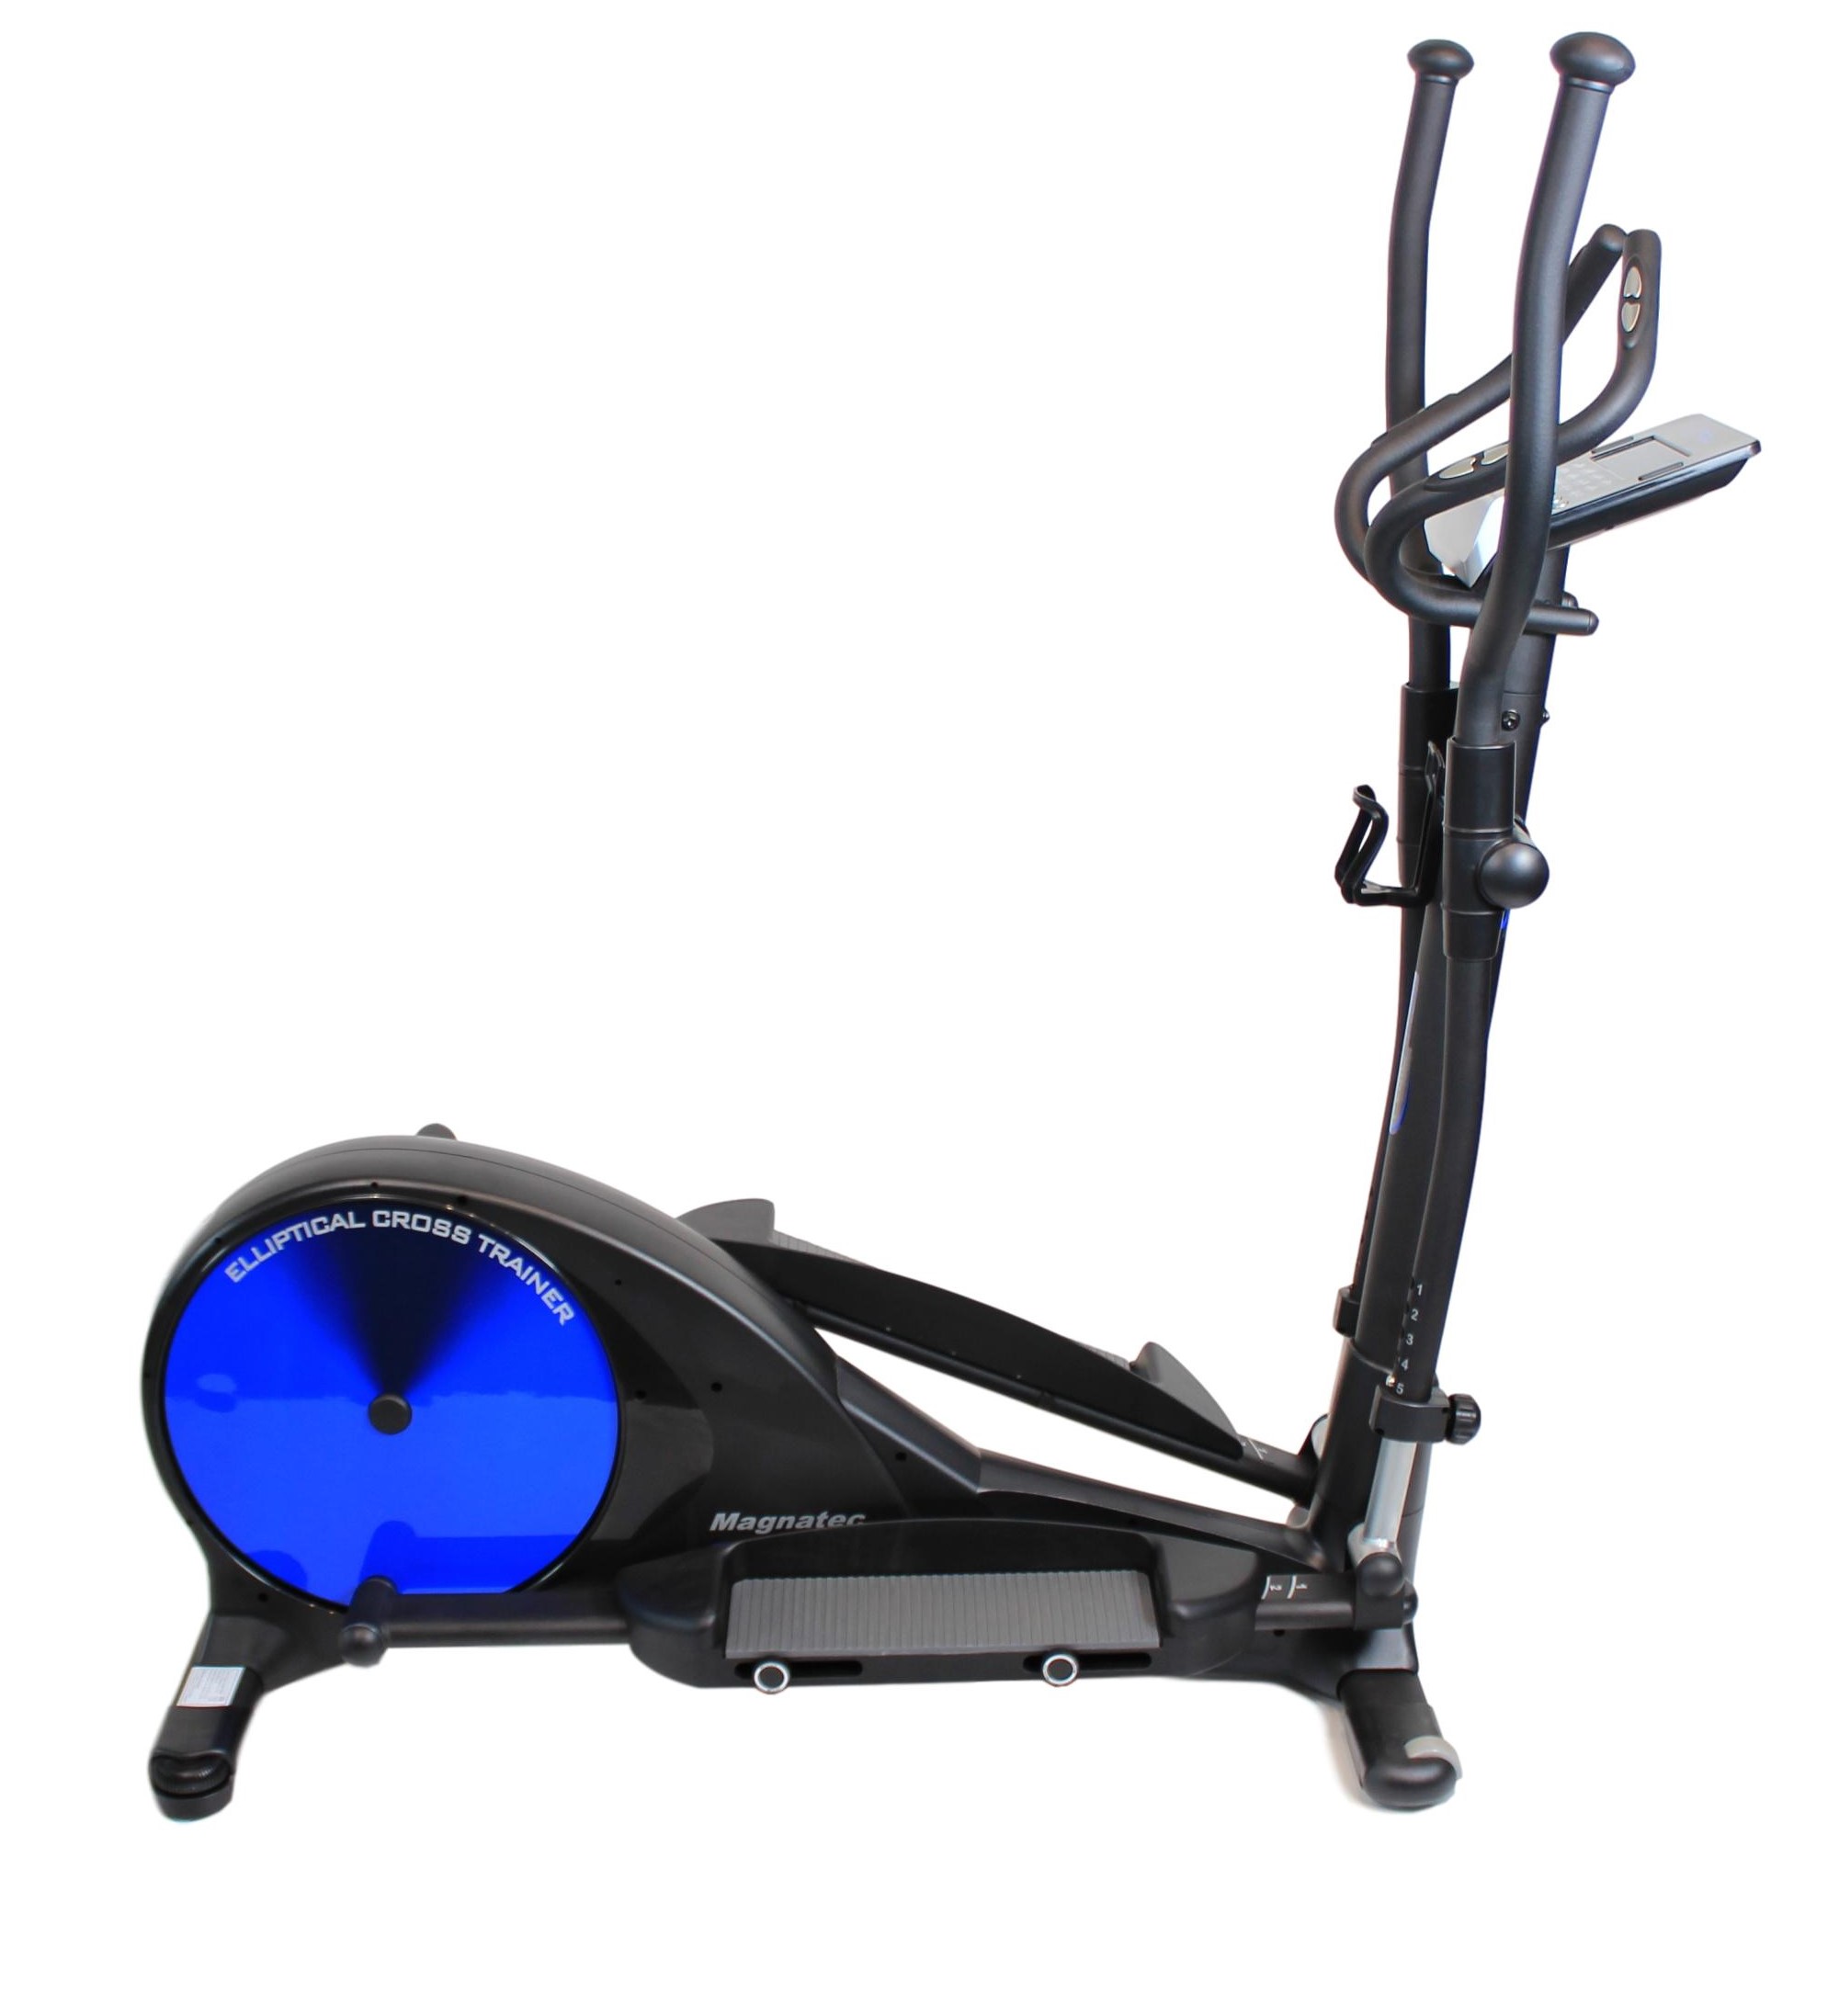 Peak Fitness – VG60i Crosstrainer